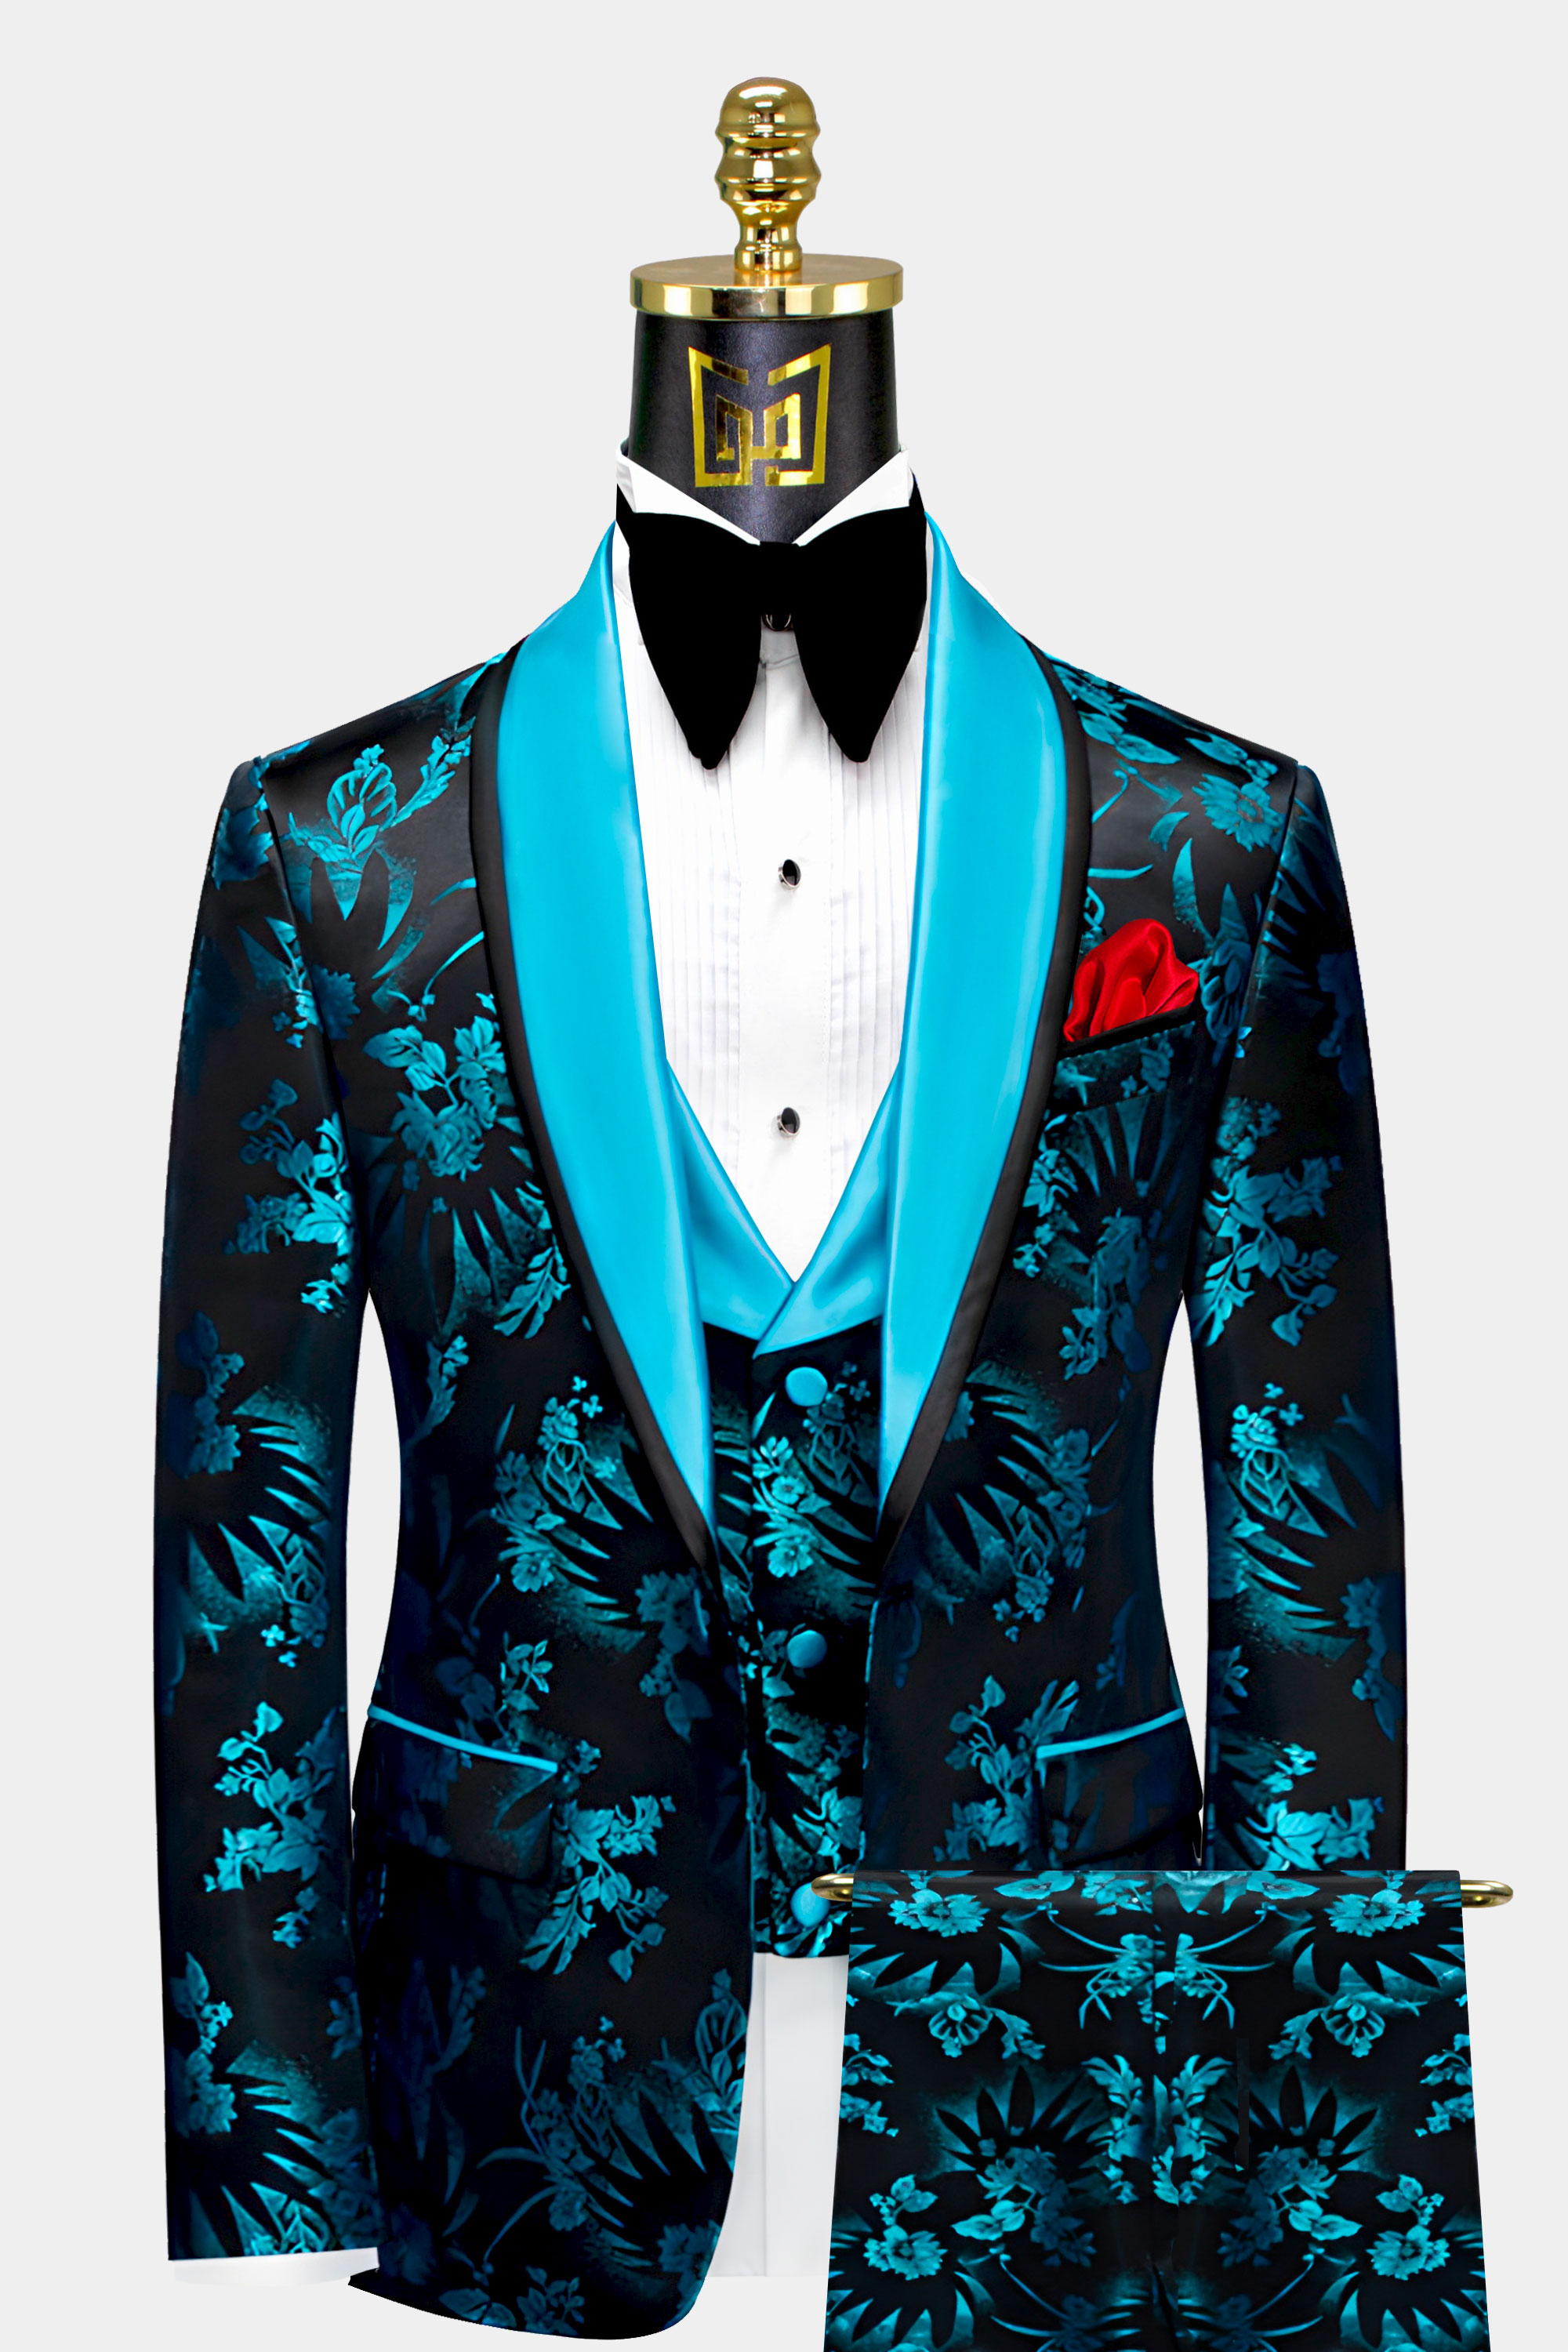 Mens-Turquoise-and-Black-Tuxedo-Groom-Wedding-Suit-For-Men-from-Gentlemansguru.com